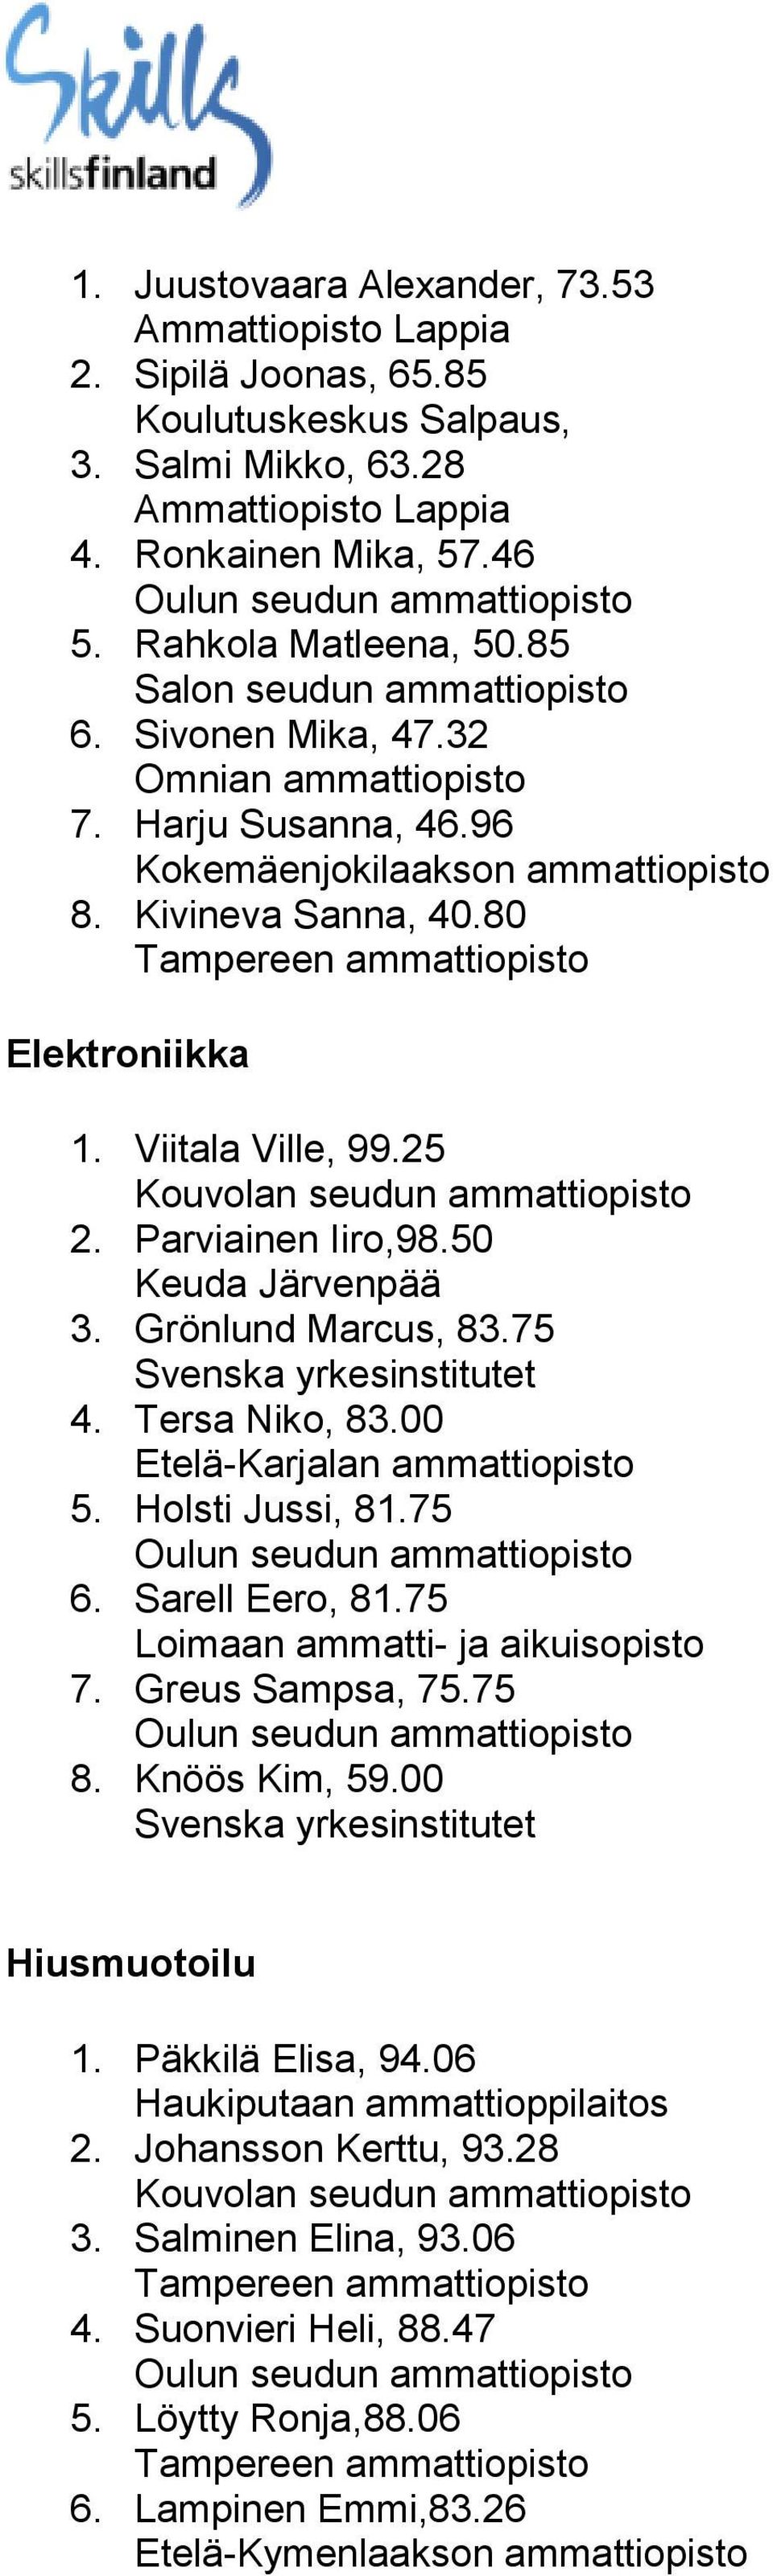 75 Svenska yrkesinstitutet 4. Tersa Niko, 83.00 Etelä-Karjalan ammattiopisto 5. Holsti Jussi, 81.75 6. Sarell Eero, 81.75 Loimaan ammatti- ja aikuisopisto 7. Greus Sampsa, 75.75 8. Knöös Kim, 59.